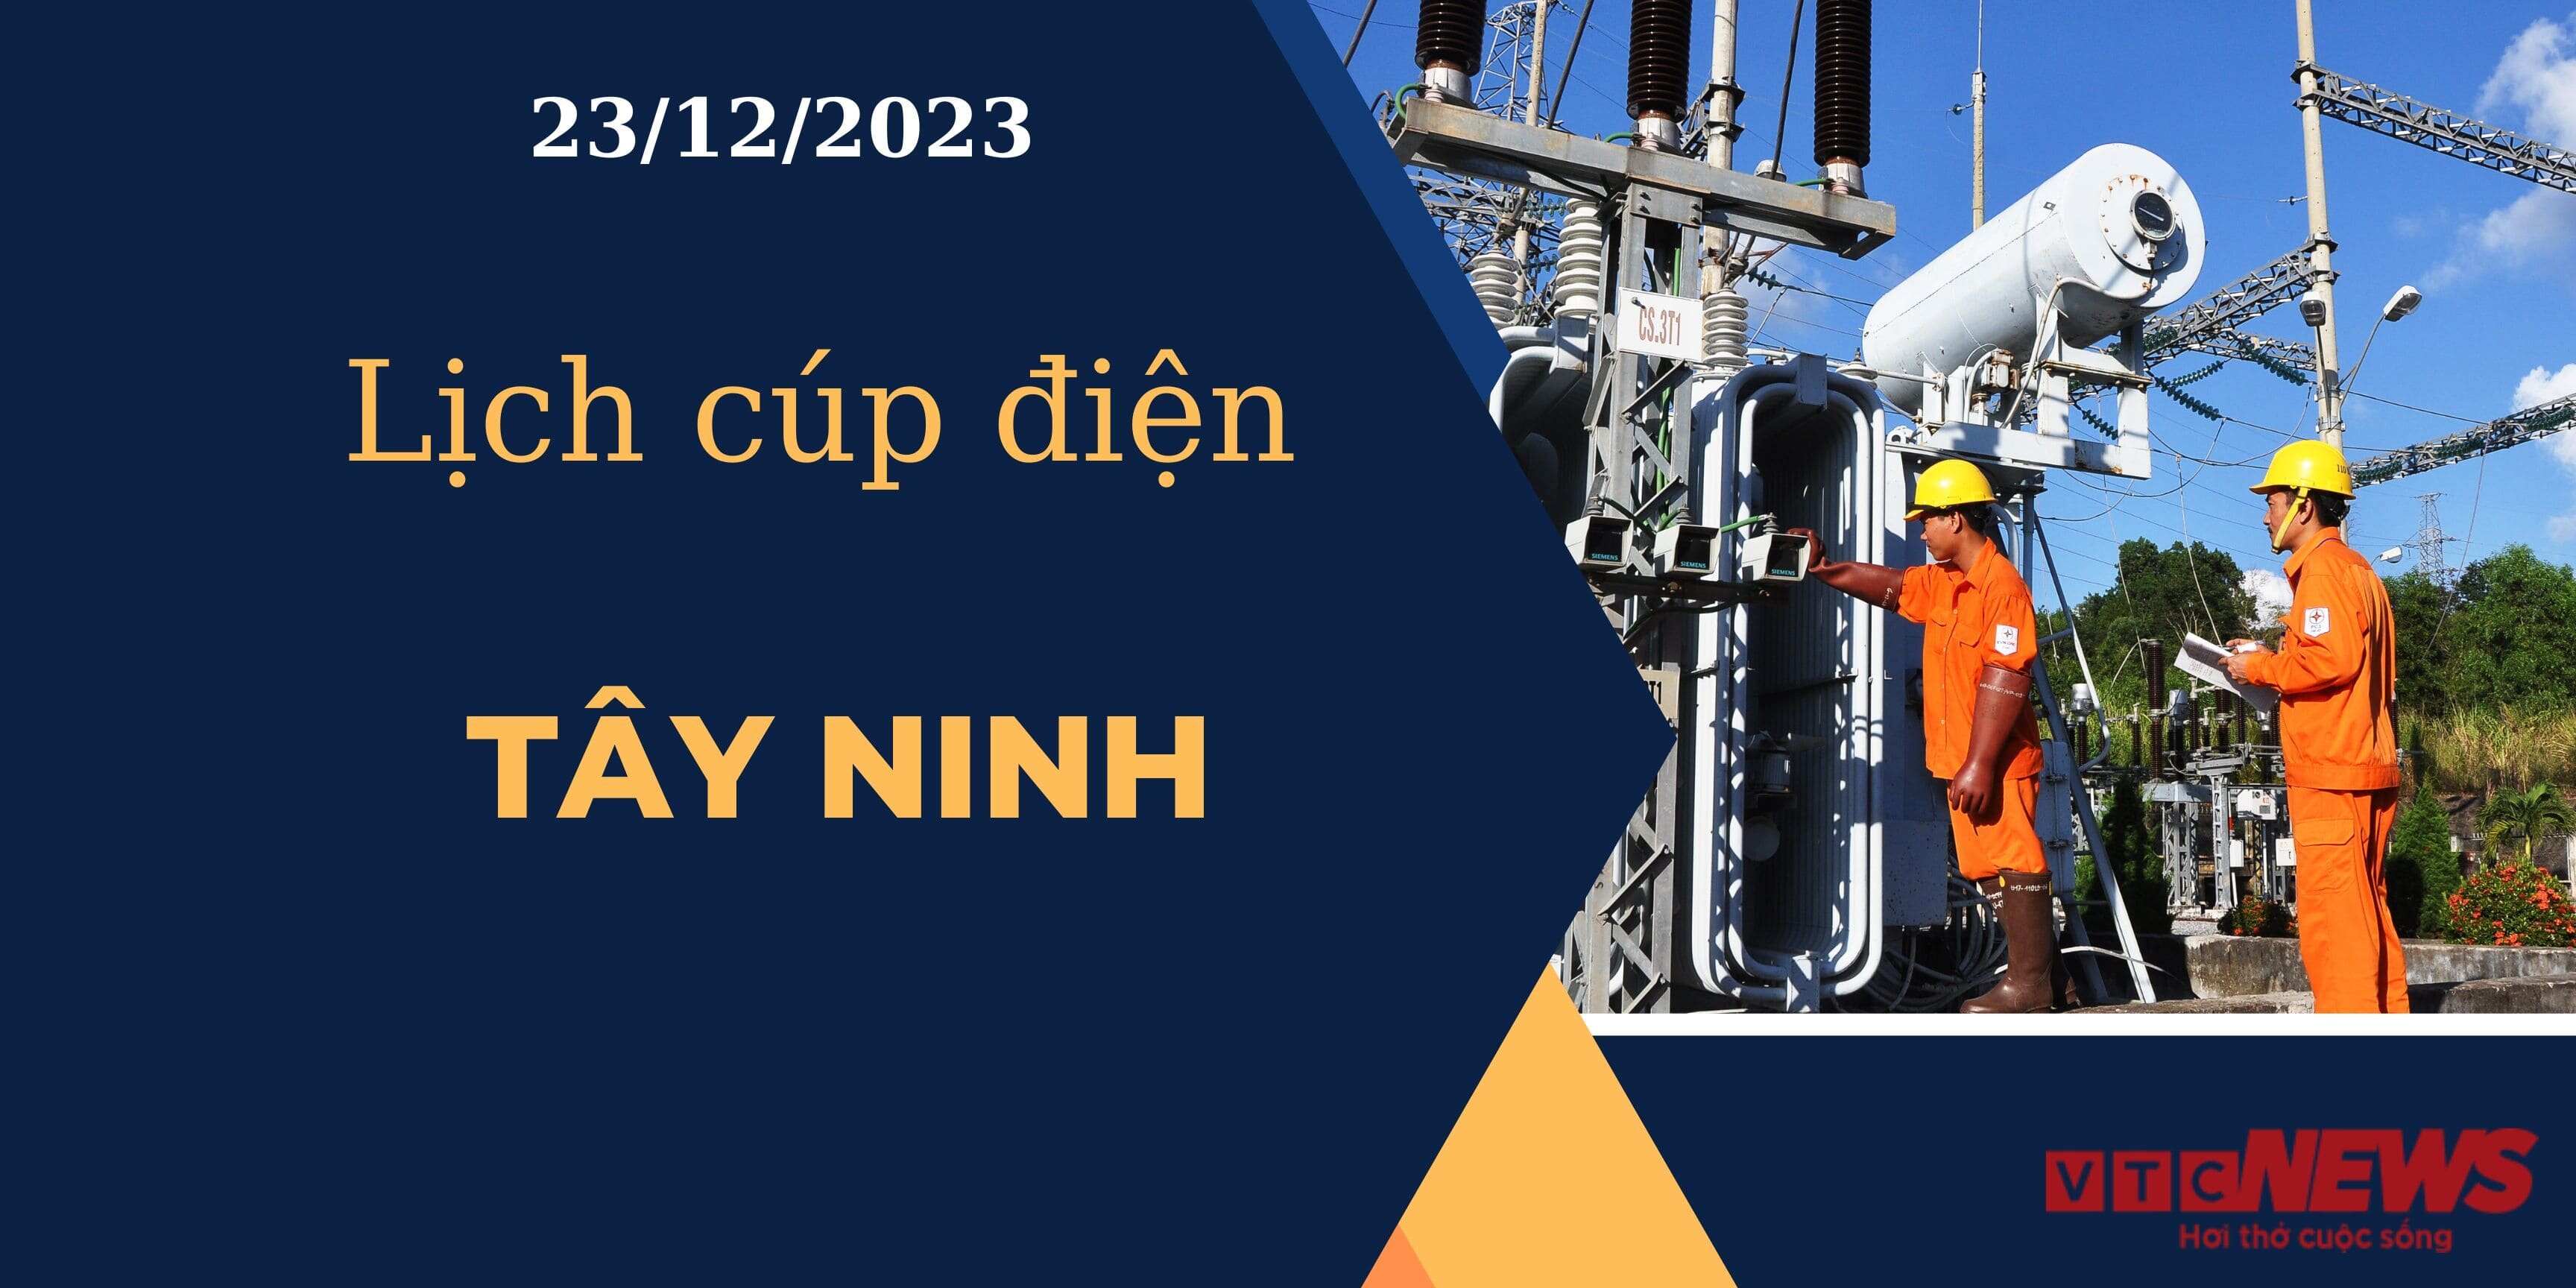 Lịch cúp điện hôm nay ngày 23/12/2023 tại Tây Ninh